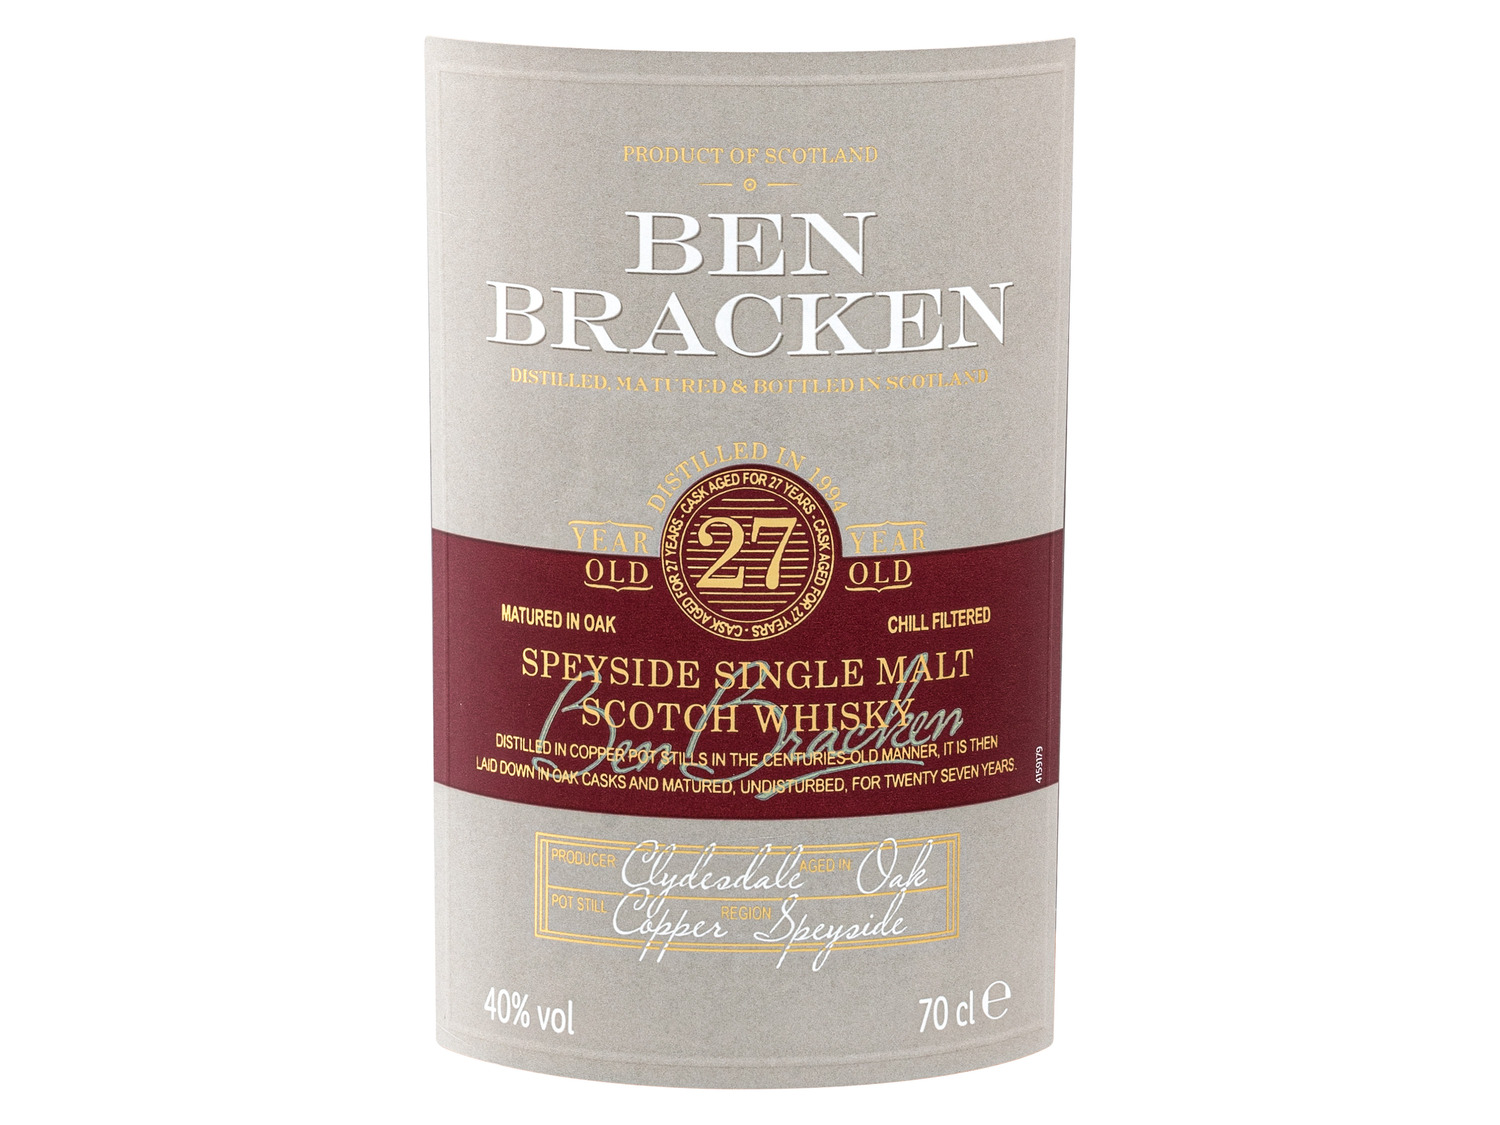 Ben Bracken Speyside Single Malt Scotch Whisky 27 Jahr…